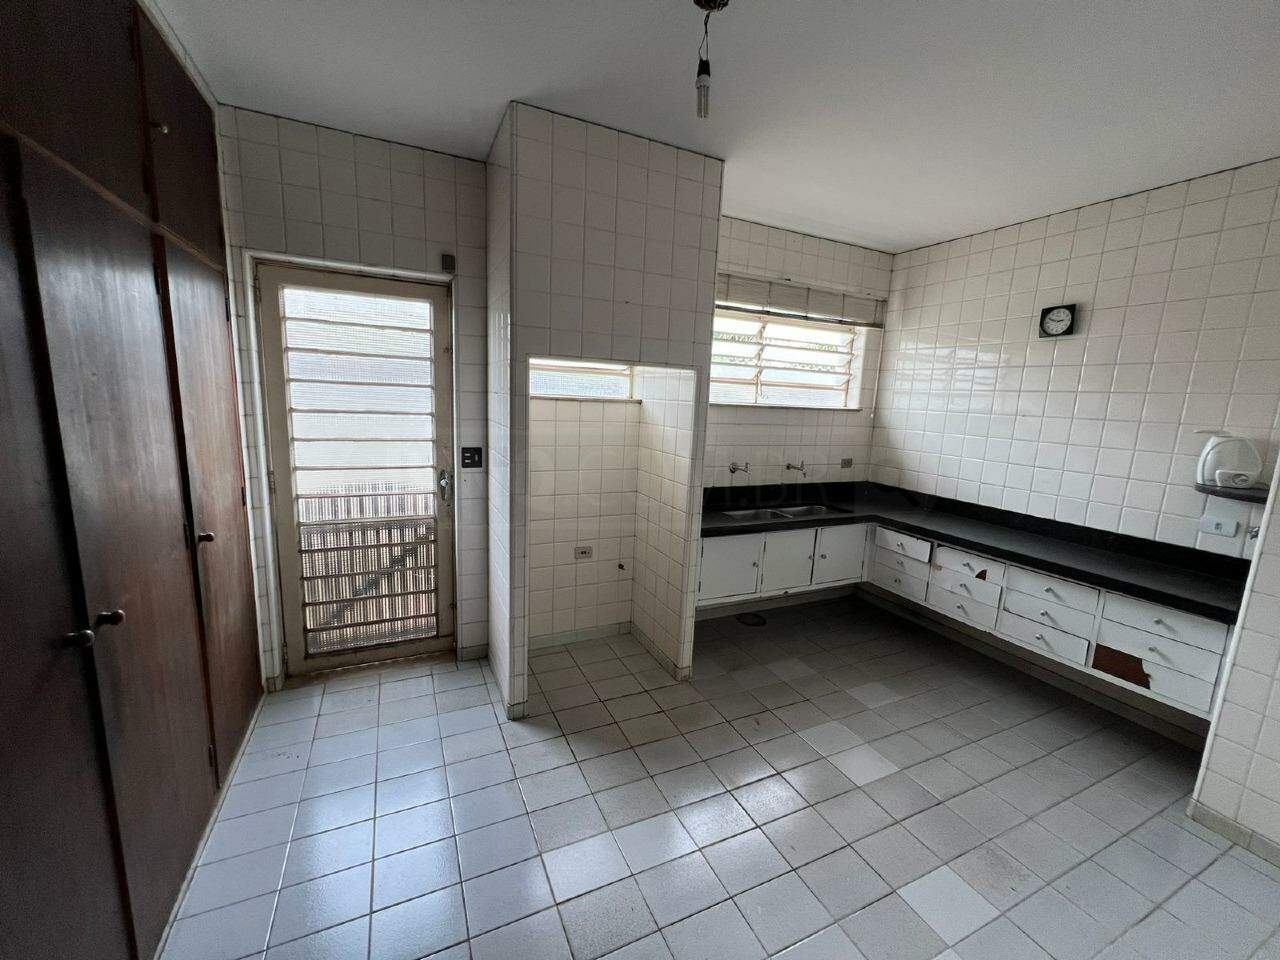 Casa à venda, 6 quartos, sendo 1 suíte, 2 vagas, no bairro Vila Independência em Piracicaba - SP